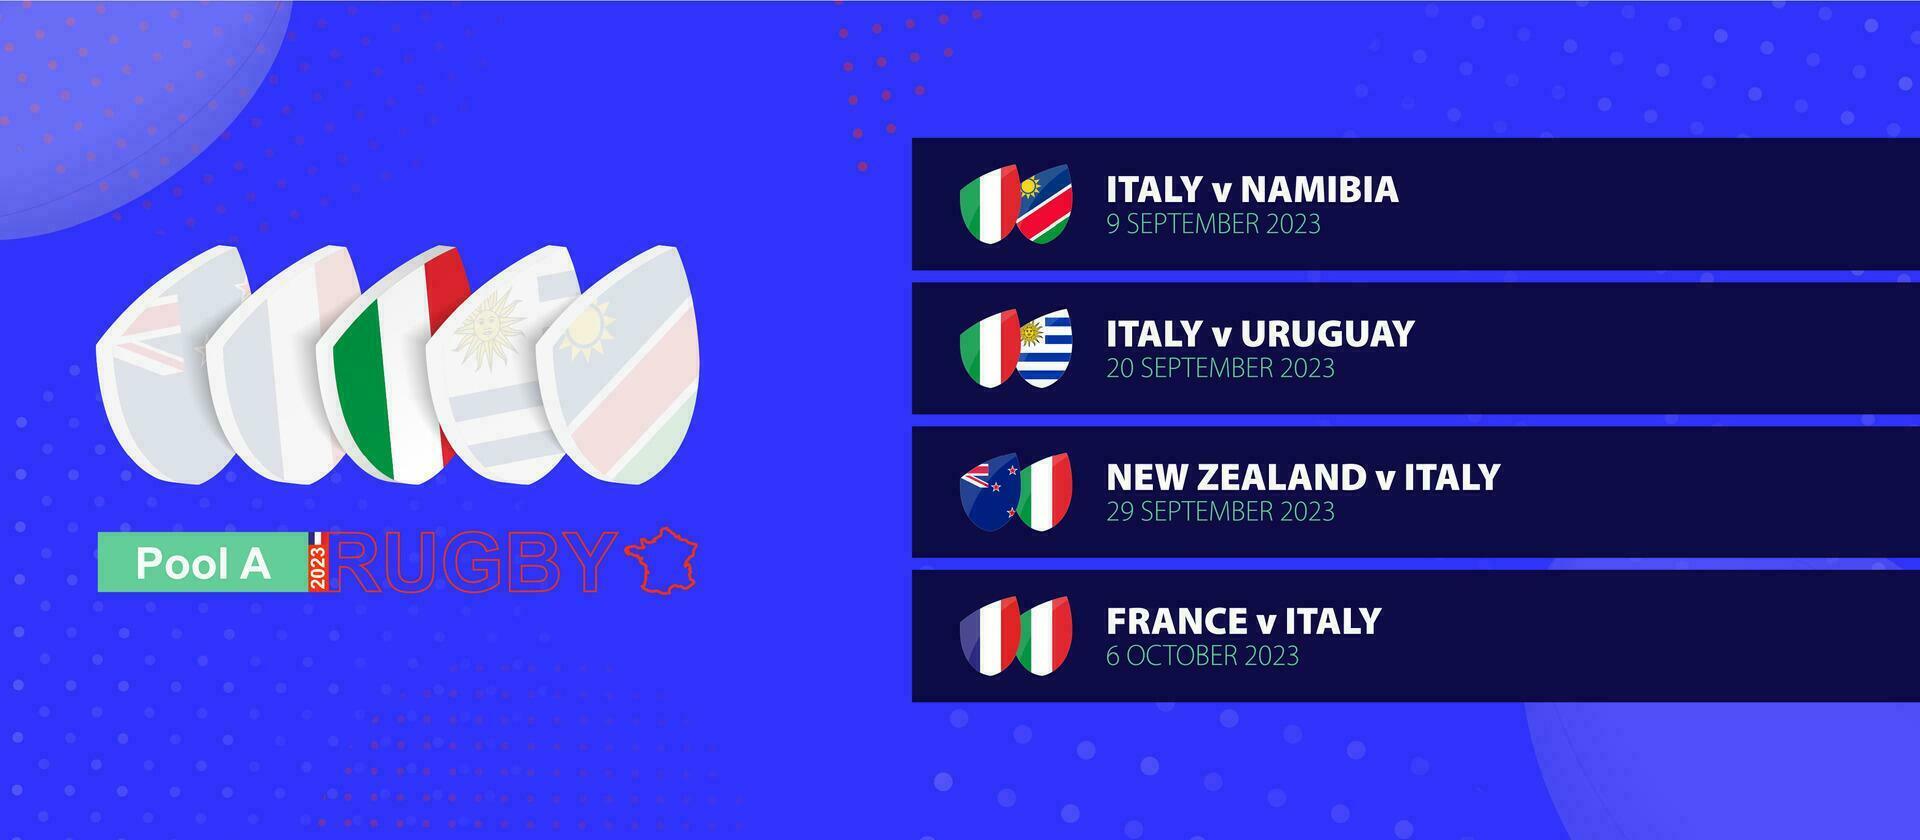 Italia rugby nacional equipo calendario partidos en grupo etapa de internacional rugby competencia. vector